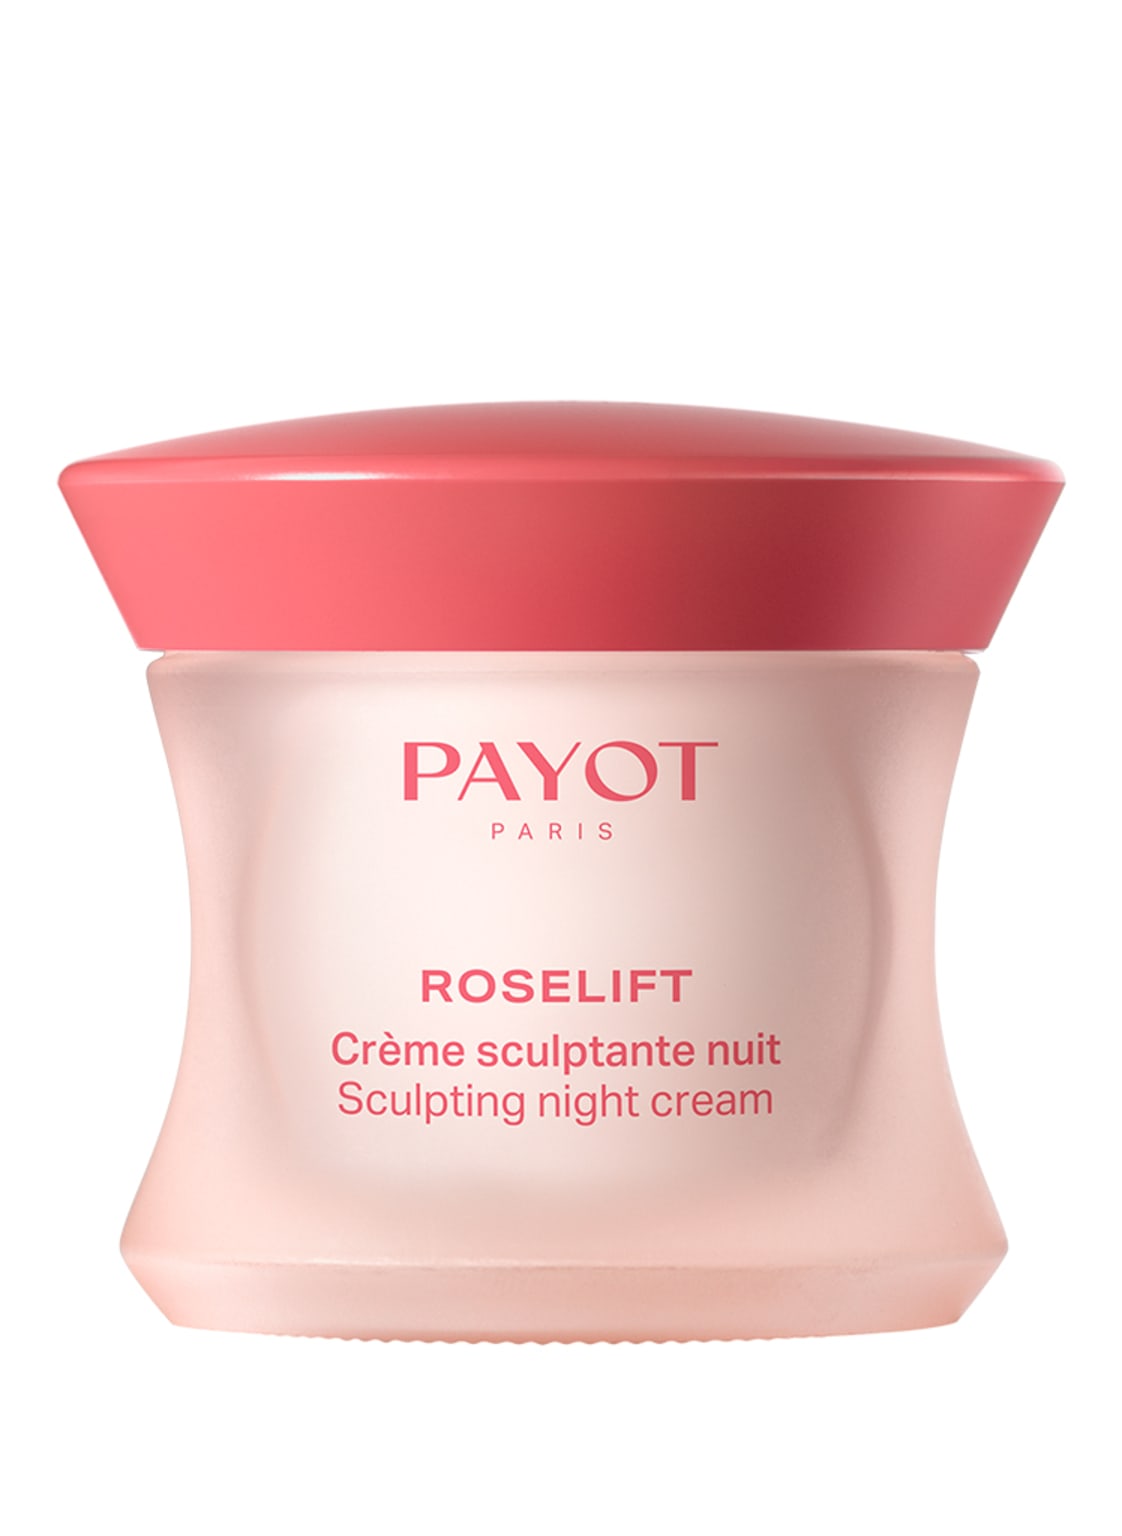 Payot Roselift Crème sculptante nuit 50 ml von PAYOT